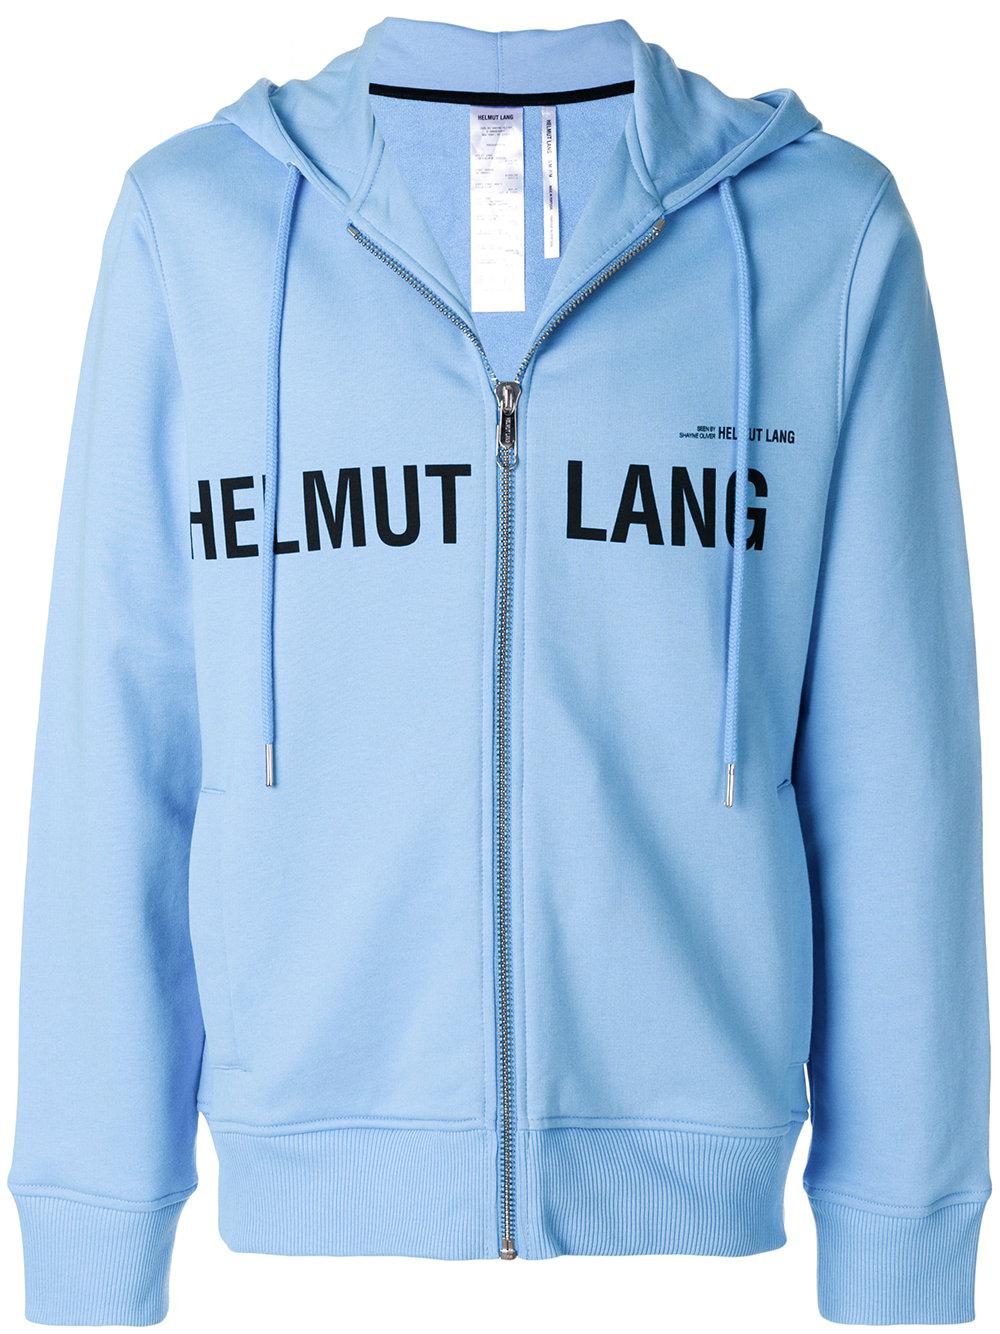 Helmut Lang Logo Printed Hoodie in Blue for Men